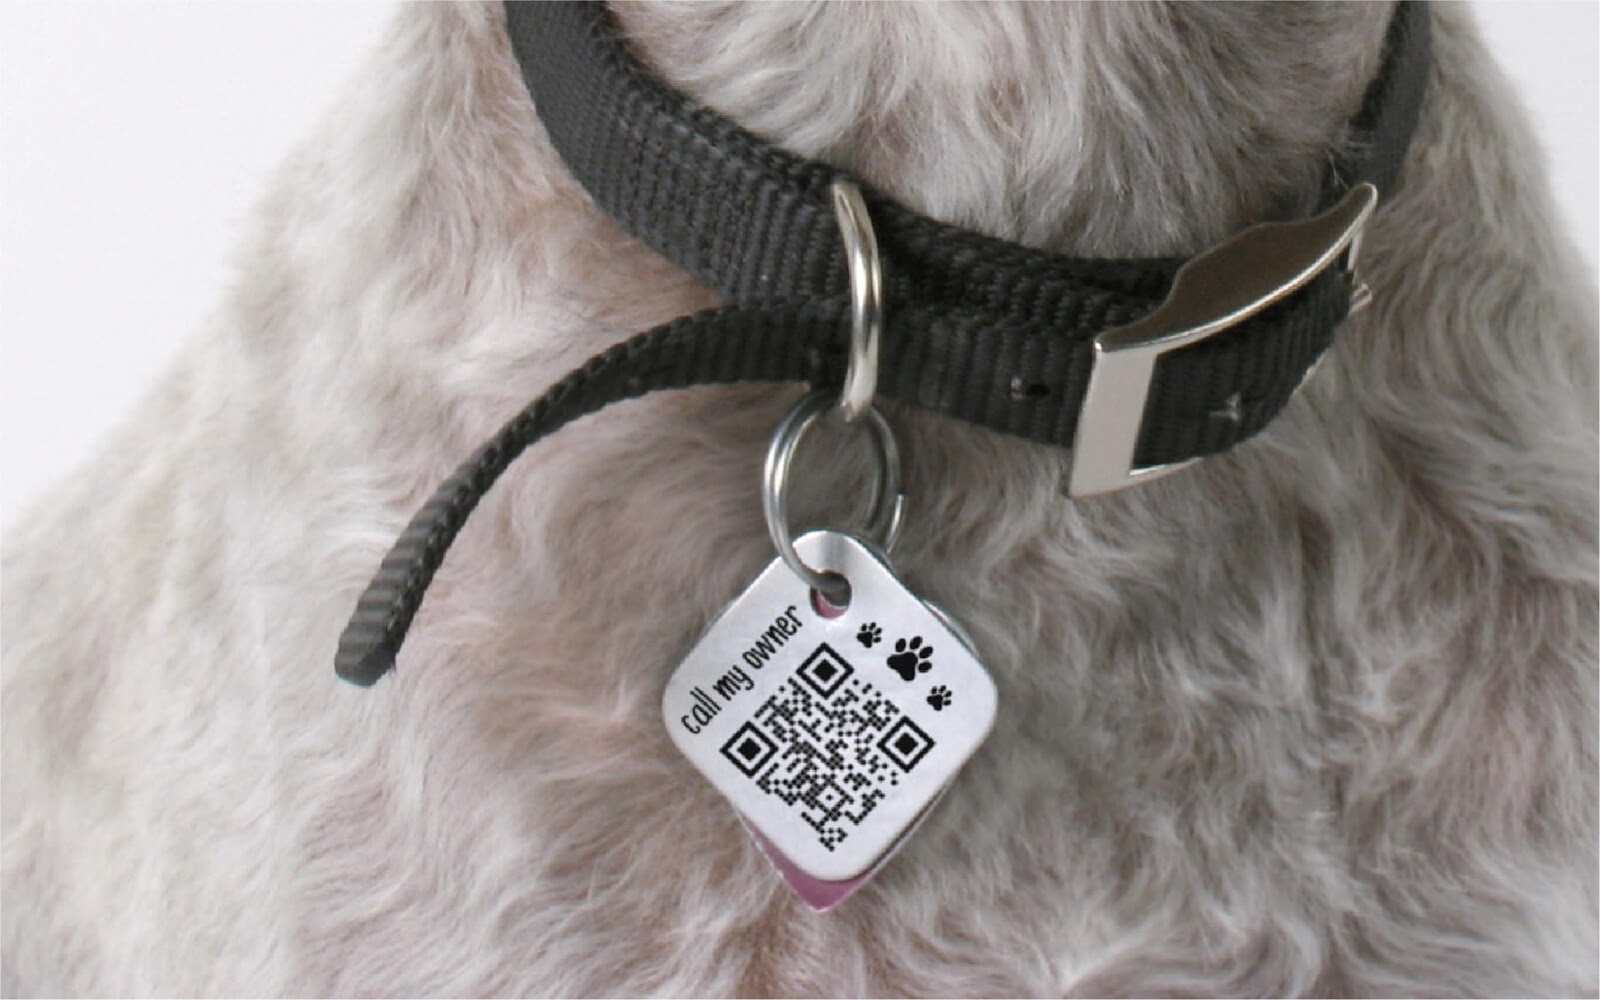 QR code on a dog tag